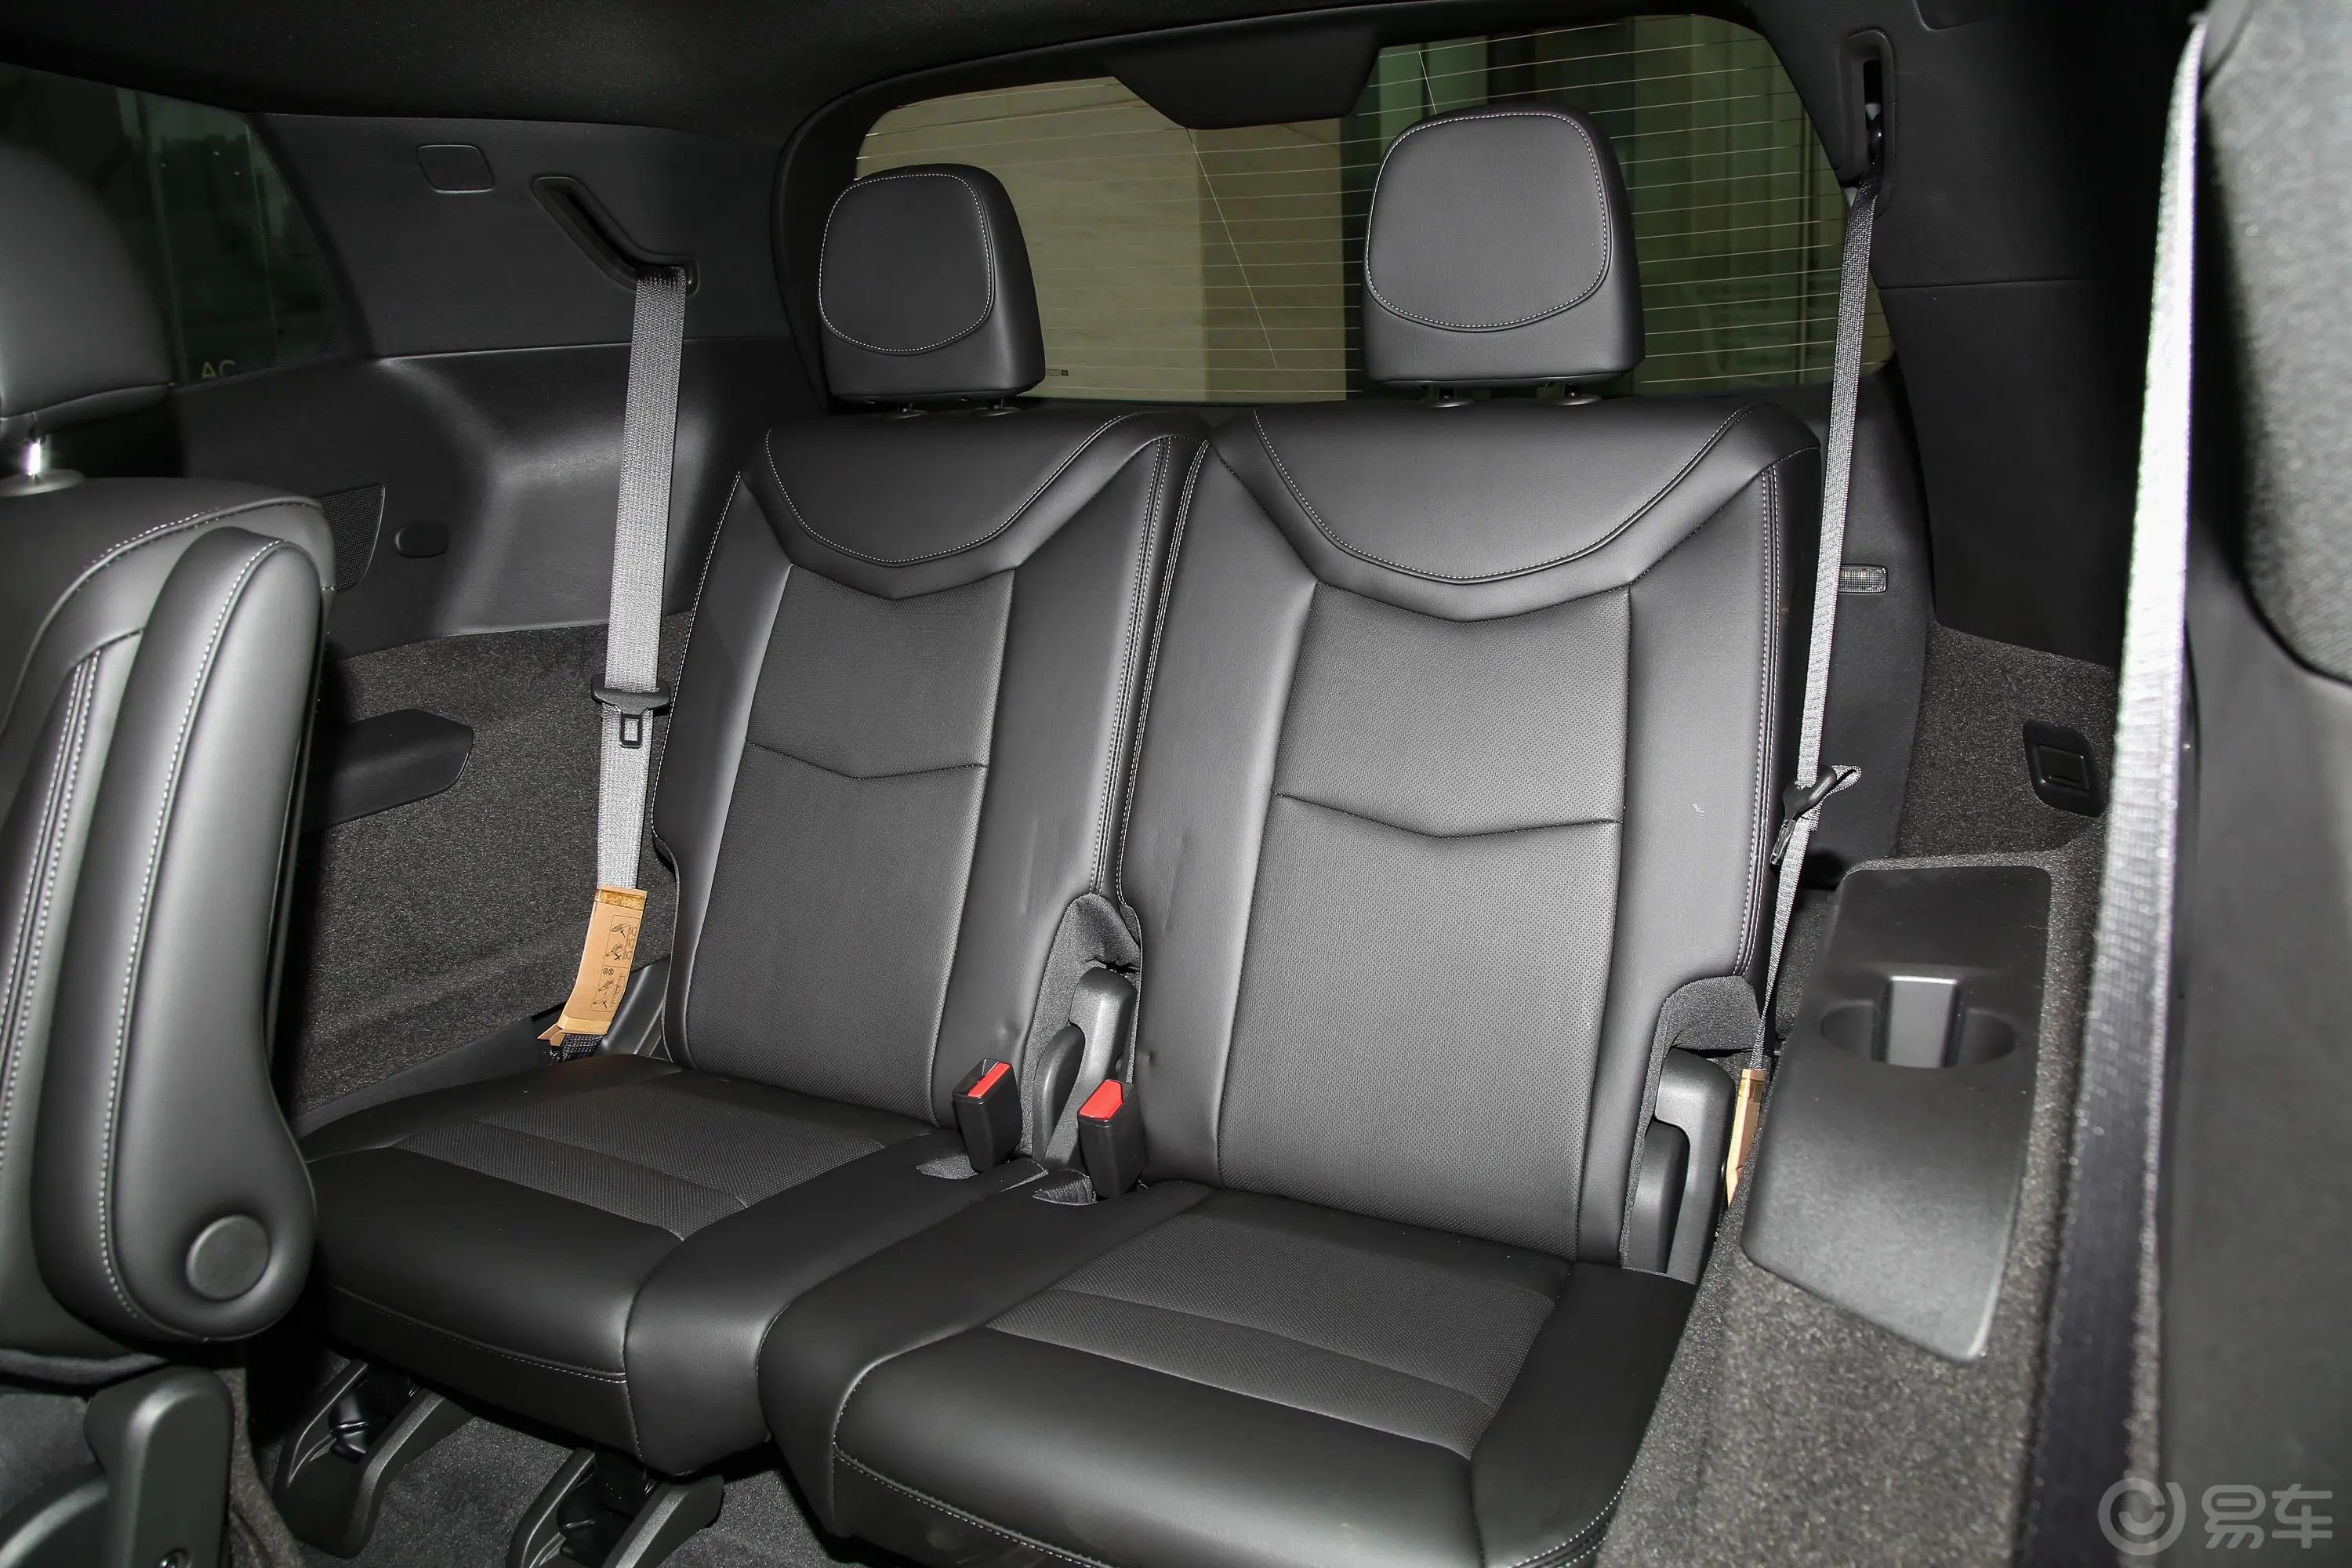 凯迪拉克XT6轻混 120周年纪念版 2.0T 四驱尊贵型 6座第三排座椅